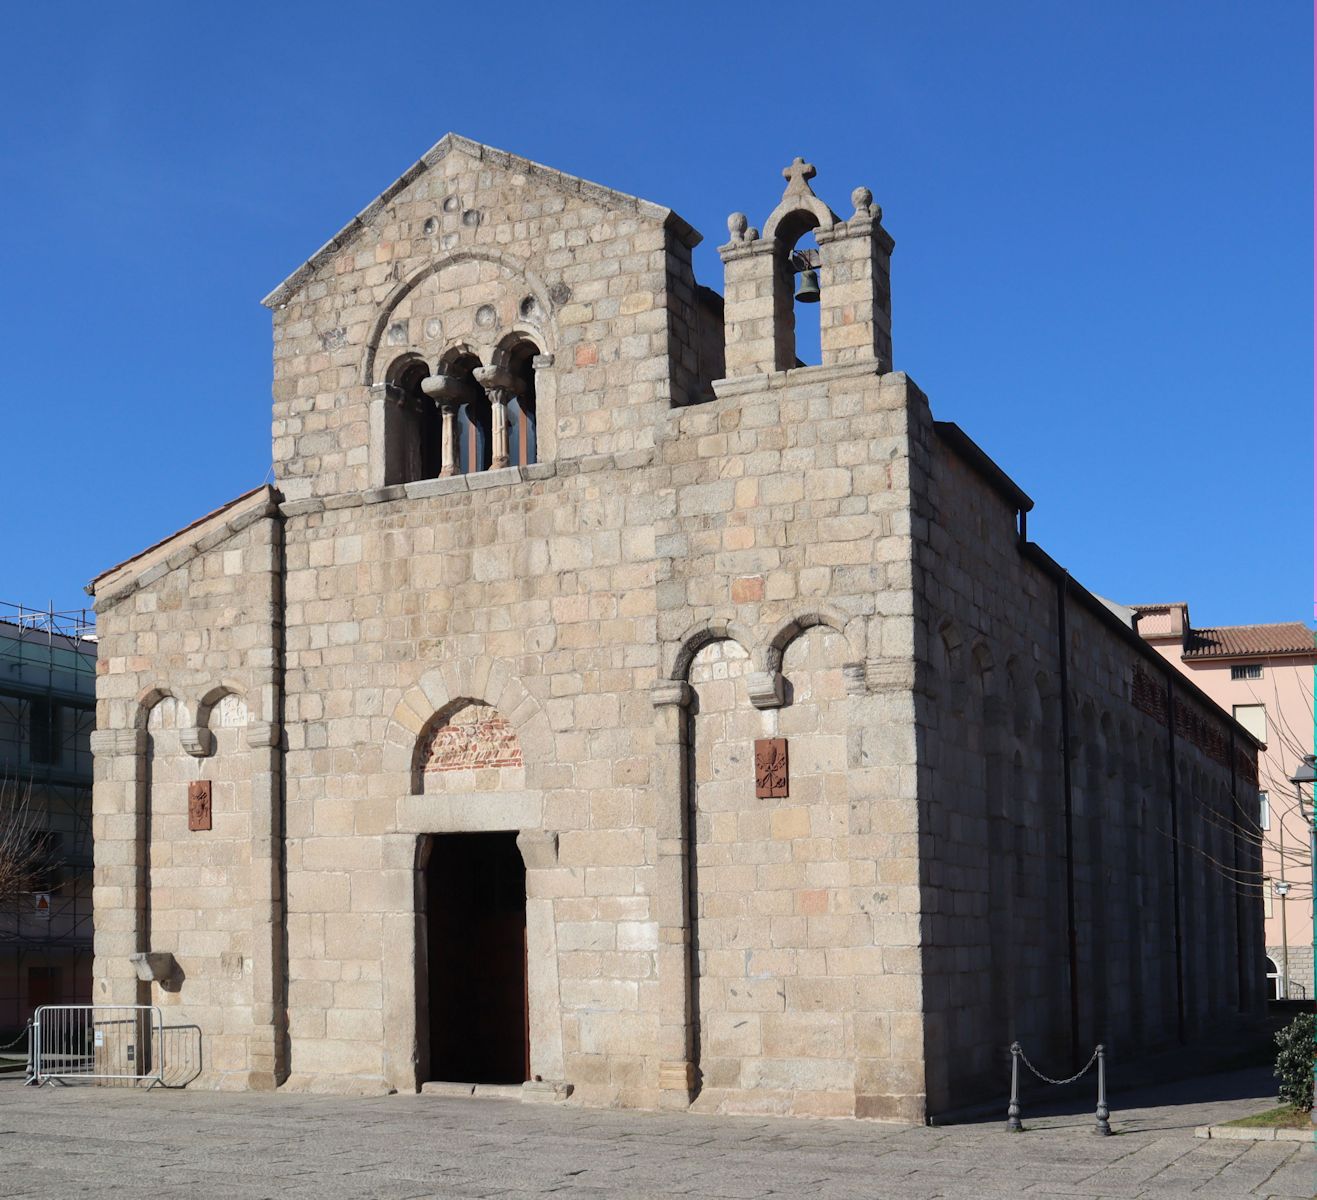 die Simplicius geweihte Basilika in Olbia, gebaut im 12. Jahrhundert an der Stelle einer frühchristlichen Kirche